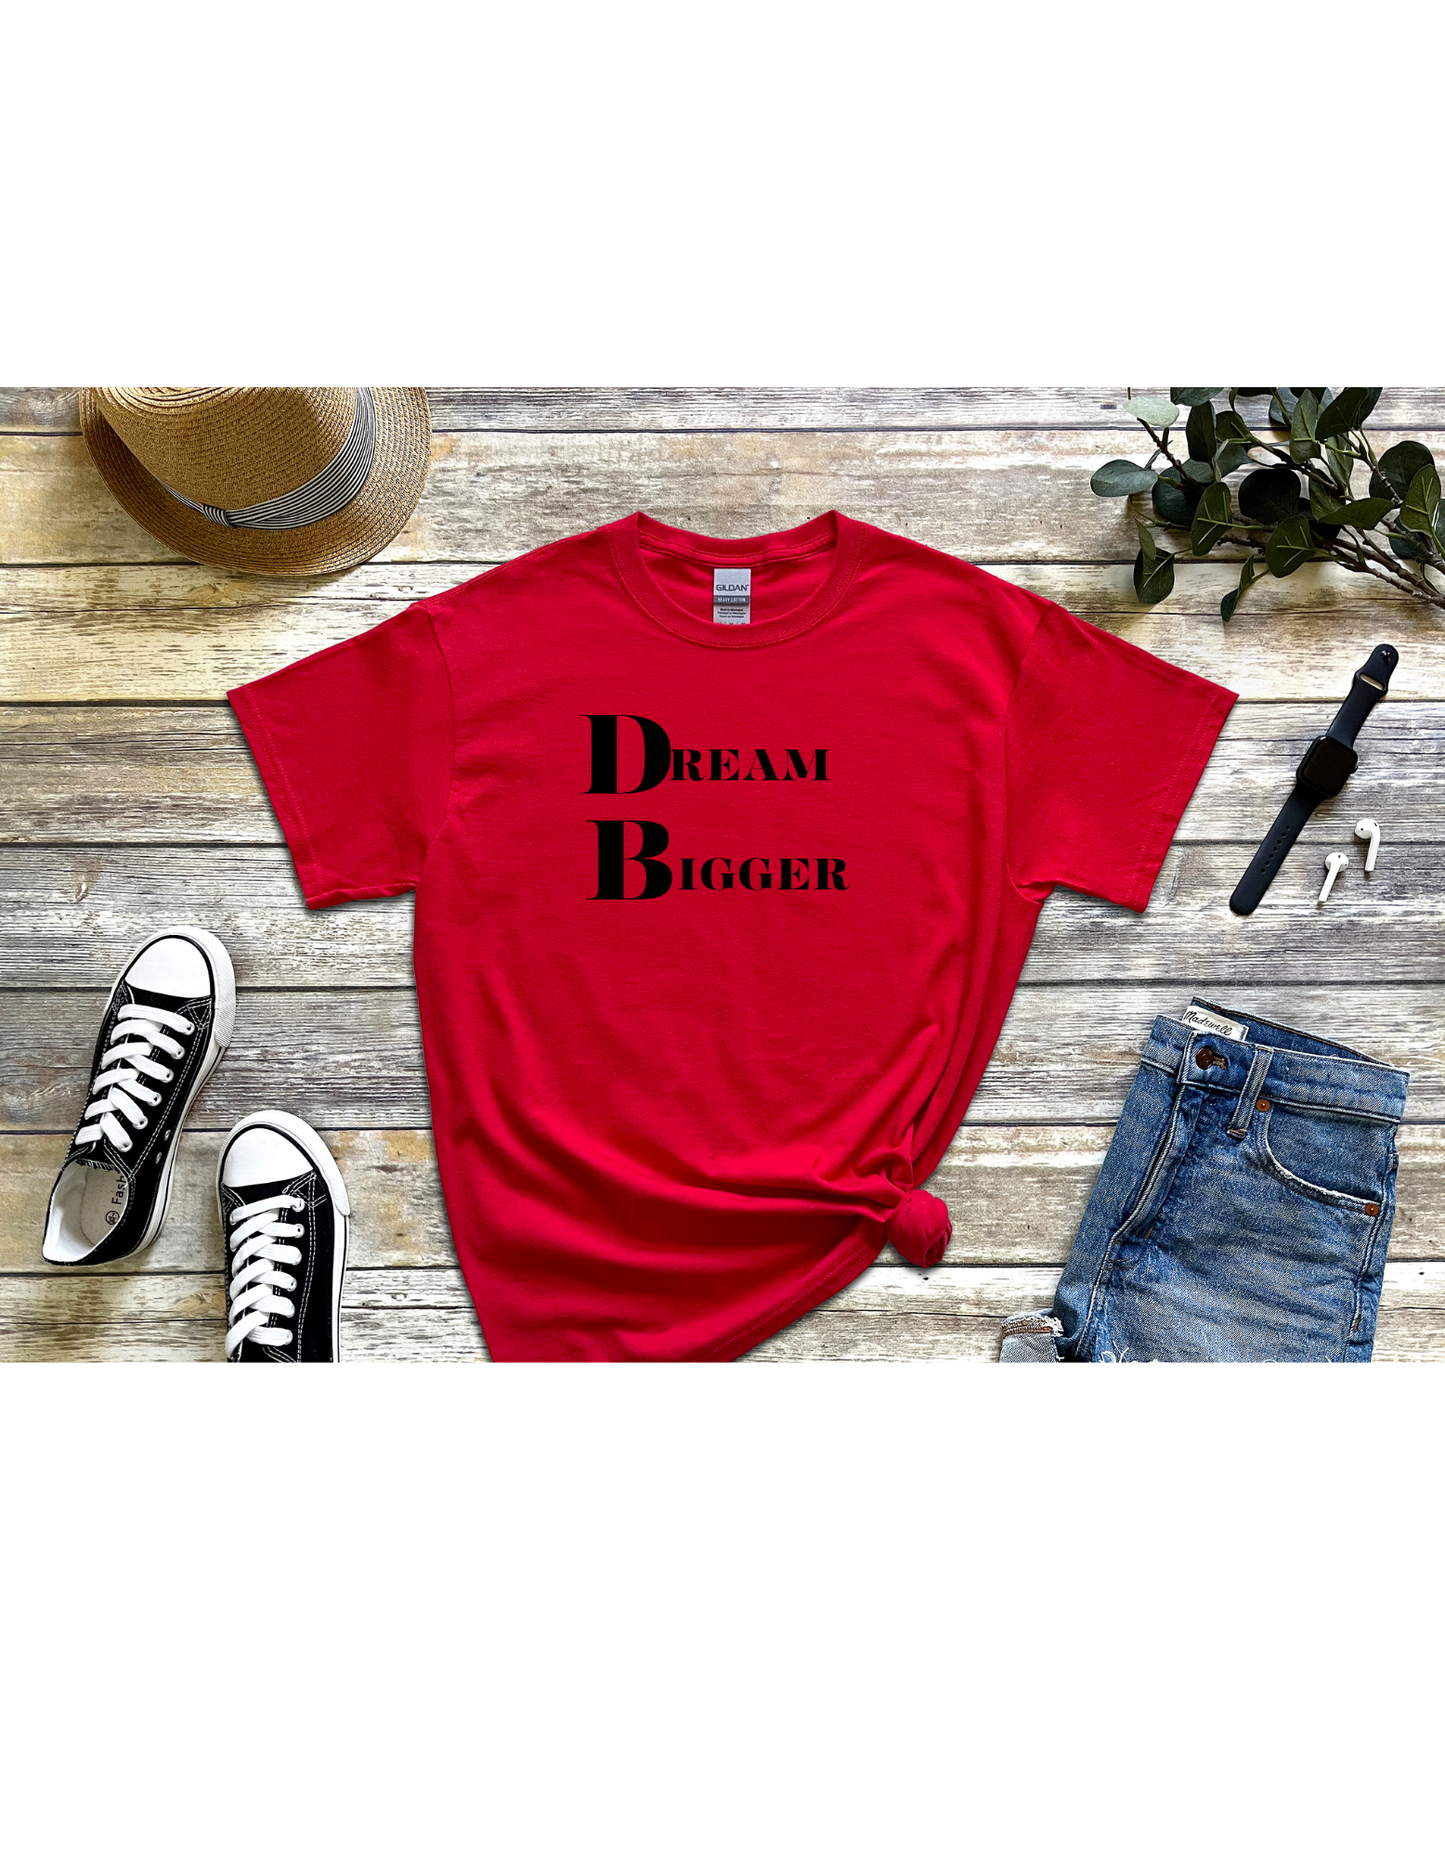 Dream Bigger Motivational Tee, Inspirational T-Shirt, Dream Shirt